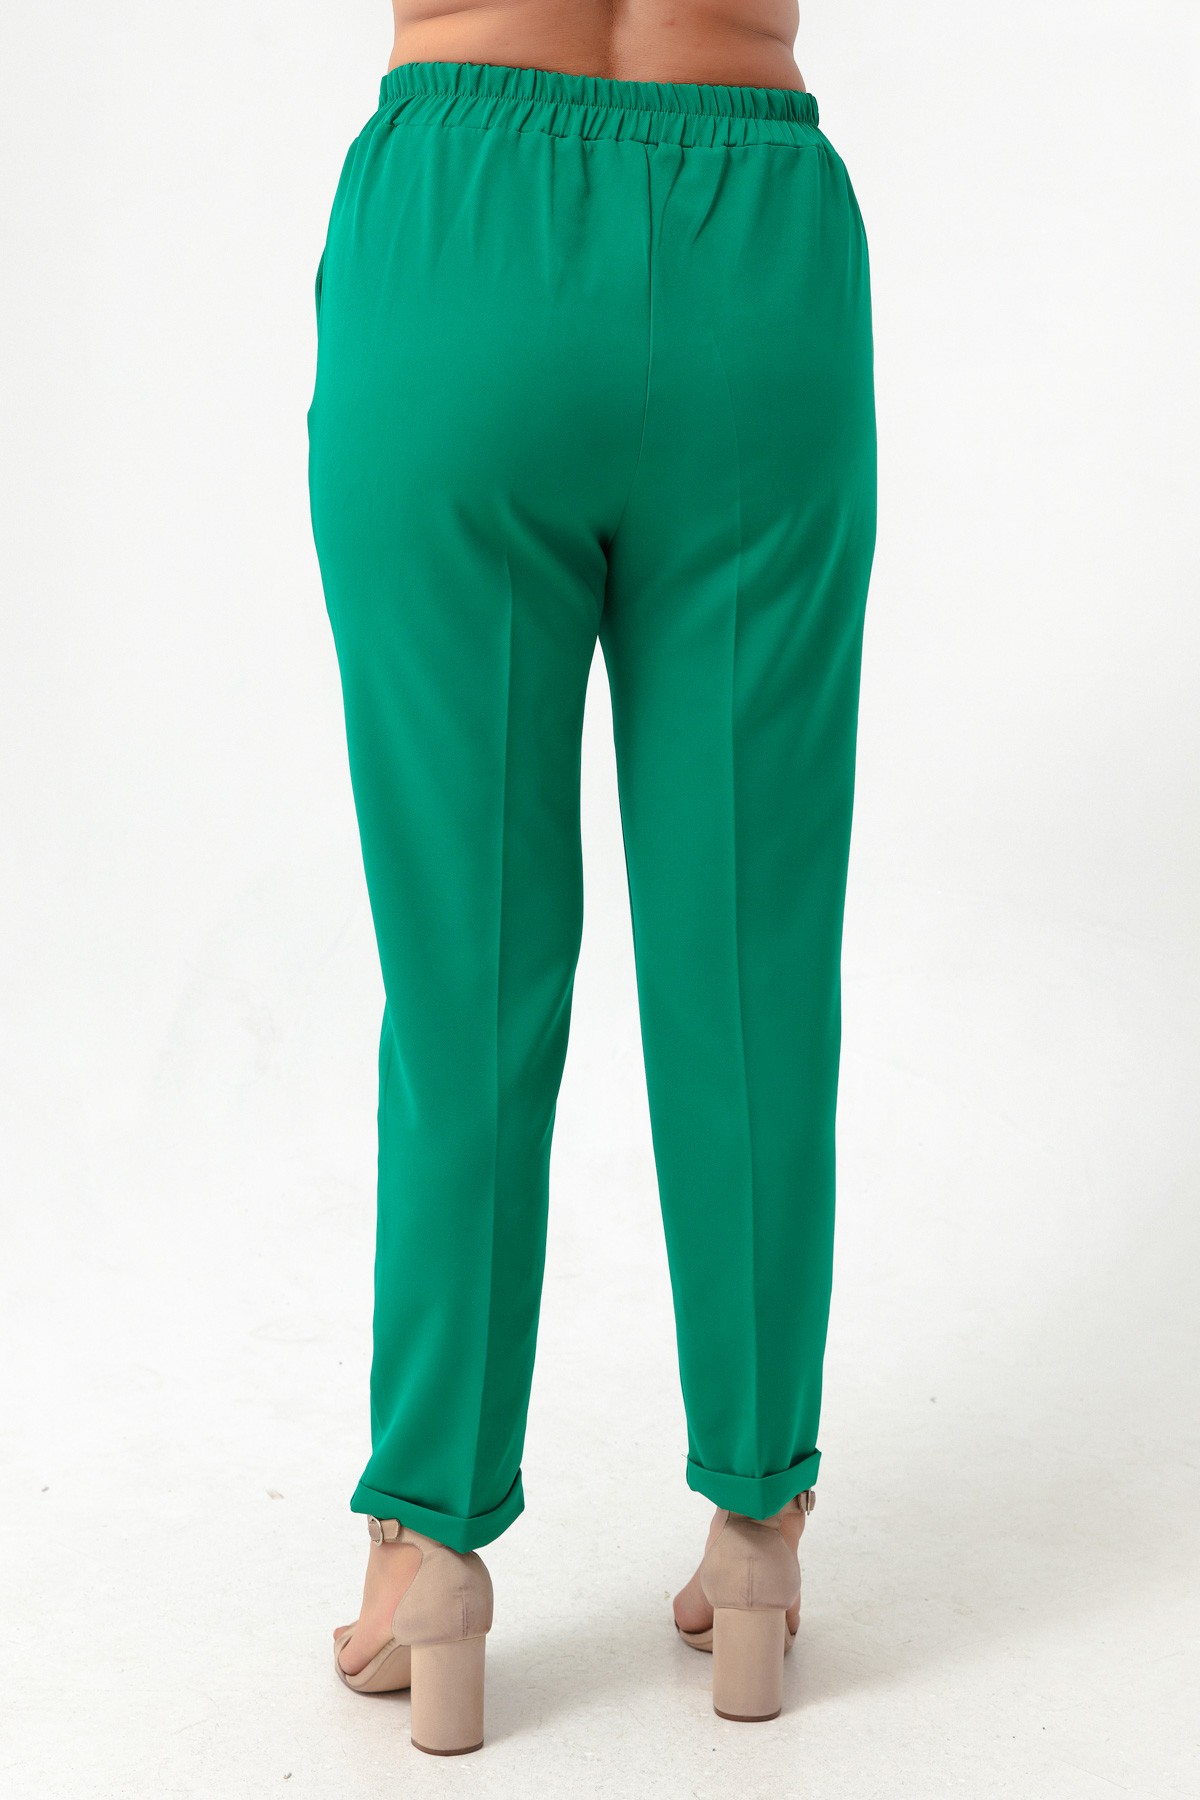 Kadın Beli Lastikli Büyük Beden Pantolon - Yeşil